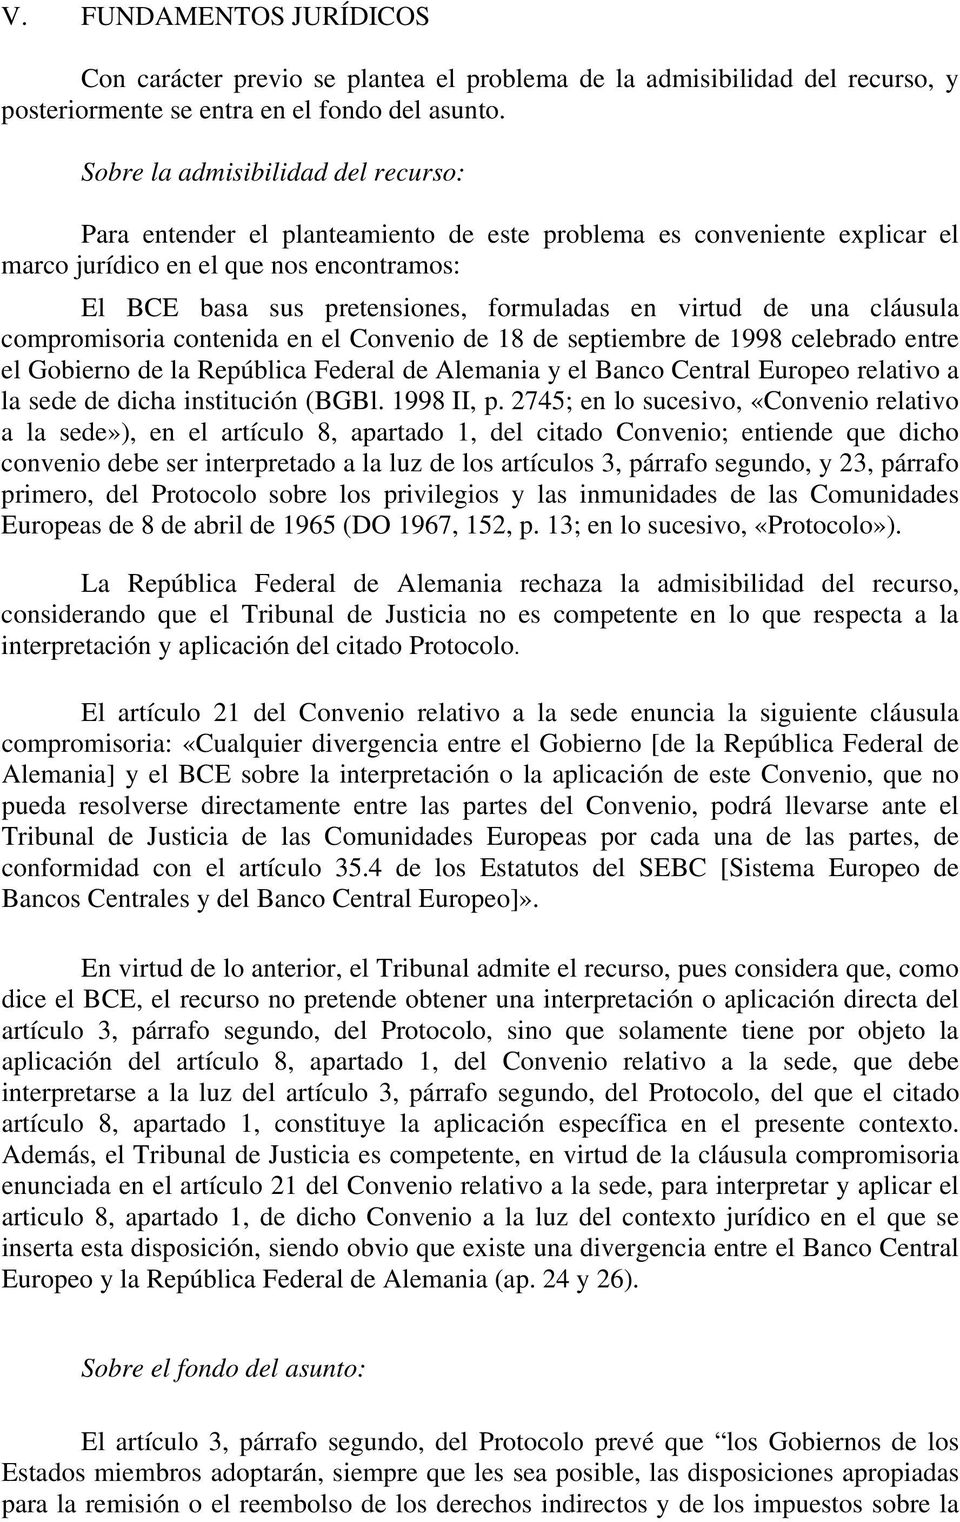 virtud de una cláusula compromisoria contenida en el Convenio de 18 de septiembre de 1998 celebrado entre el Gobierno de la República Federal de Alemania y el Banco Central Europeo relativo a la sede